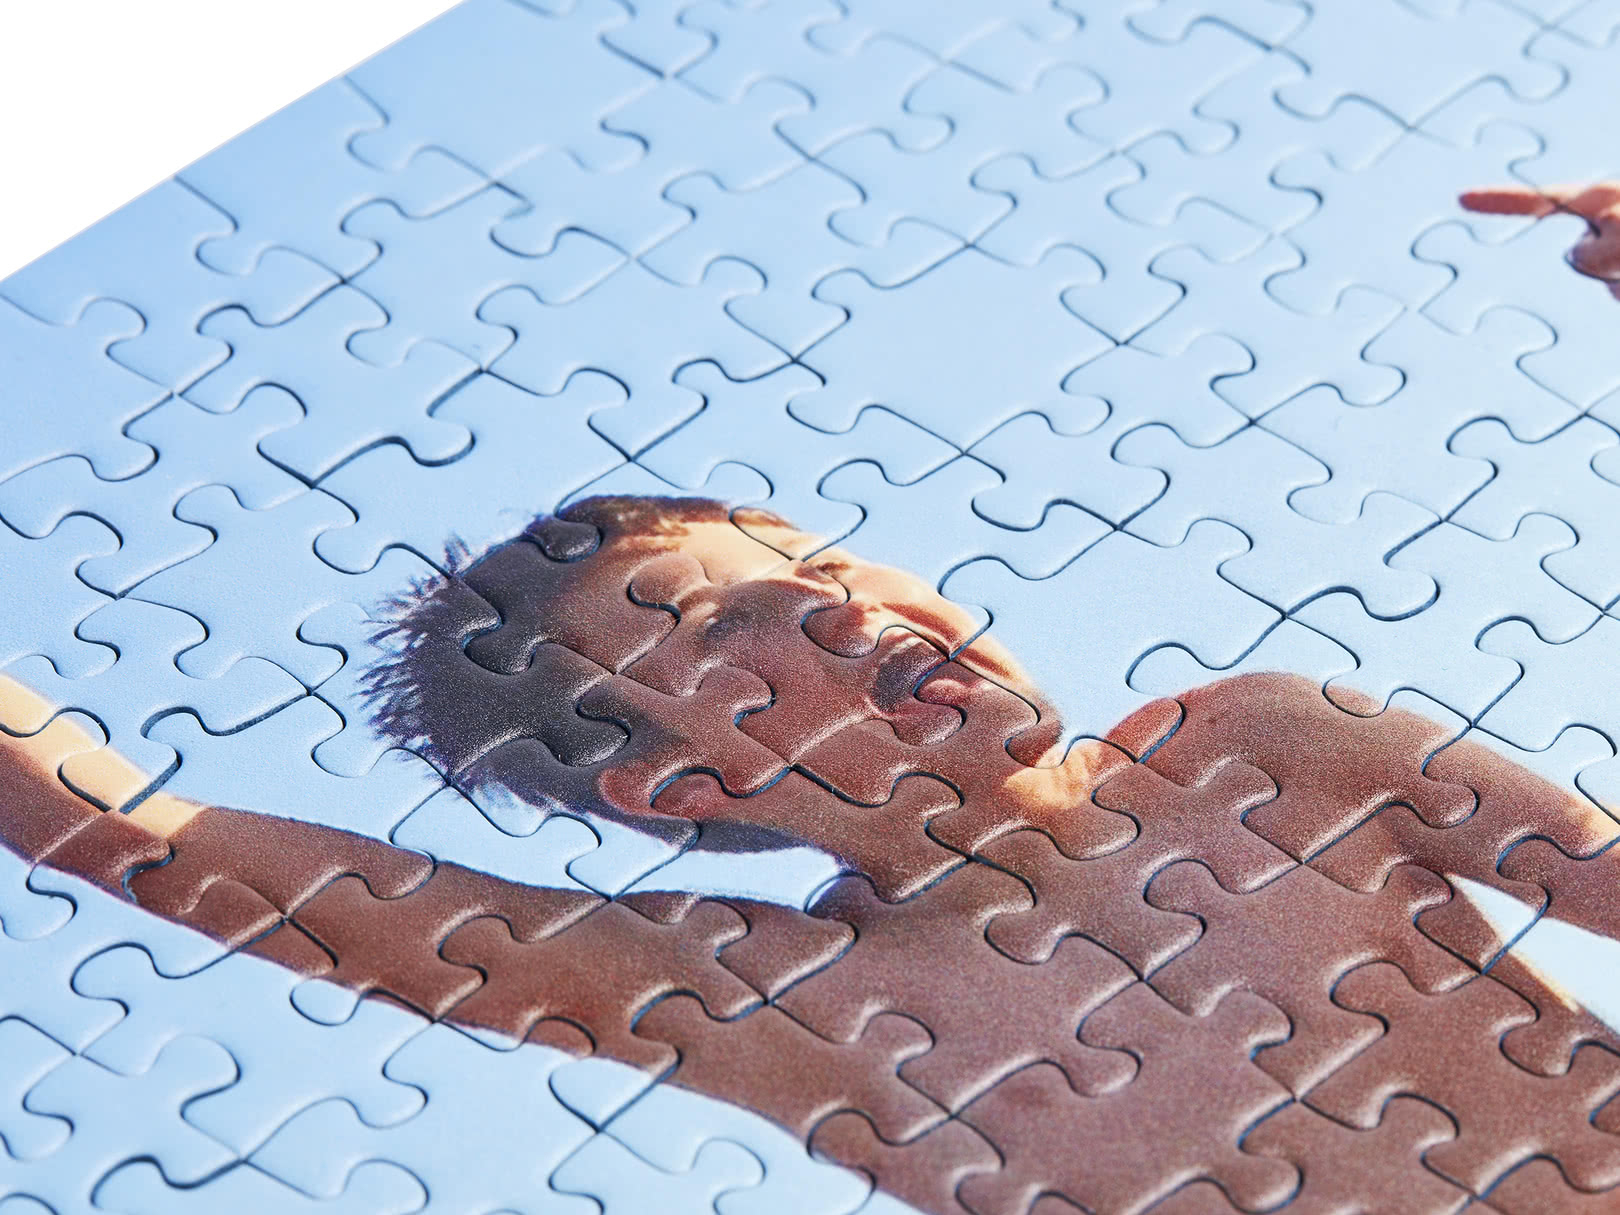 Photo Jigsaws - Personalised Puzzles - Photobox - Puzzle Print Uk